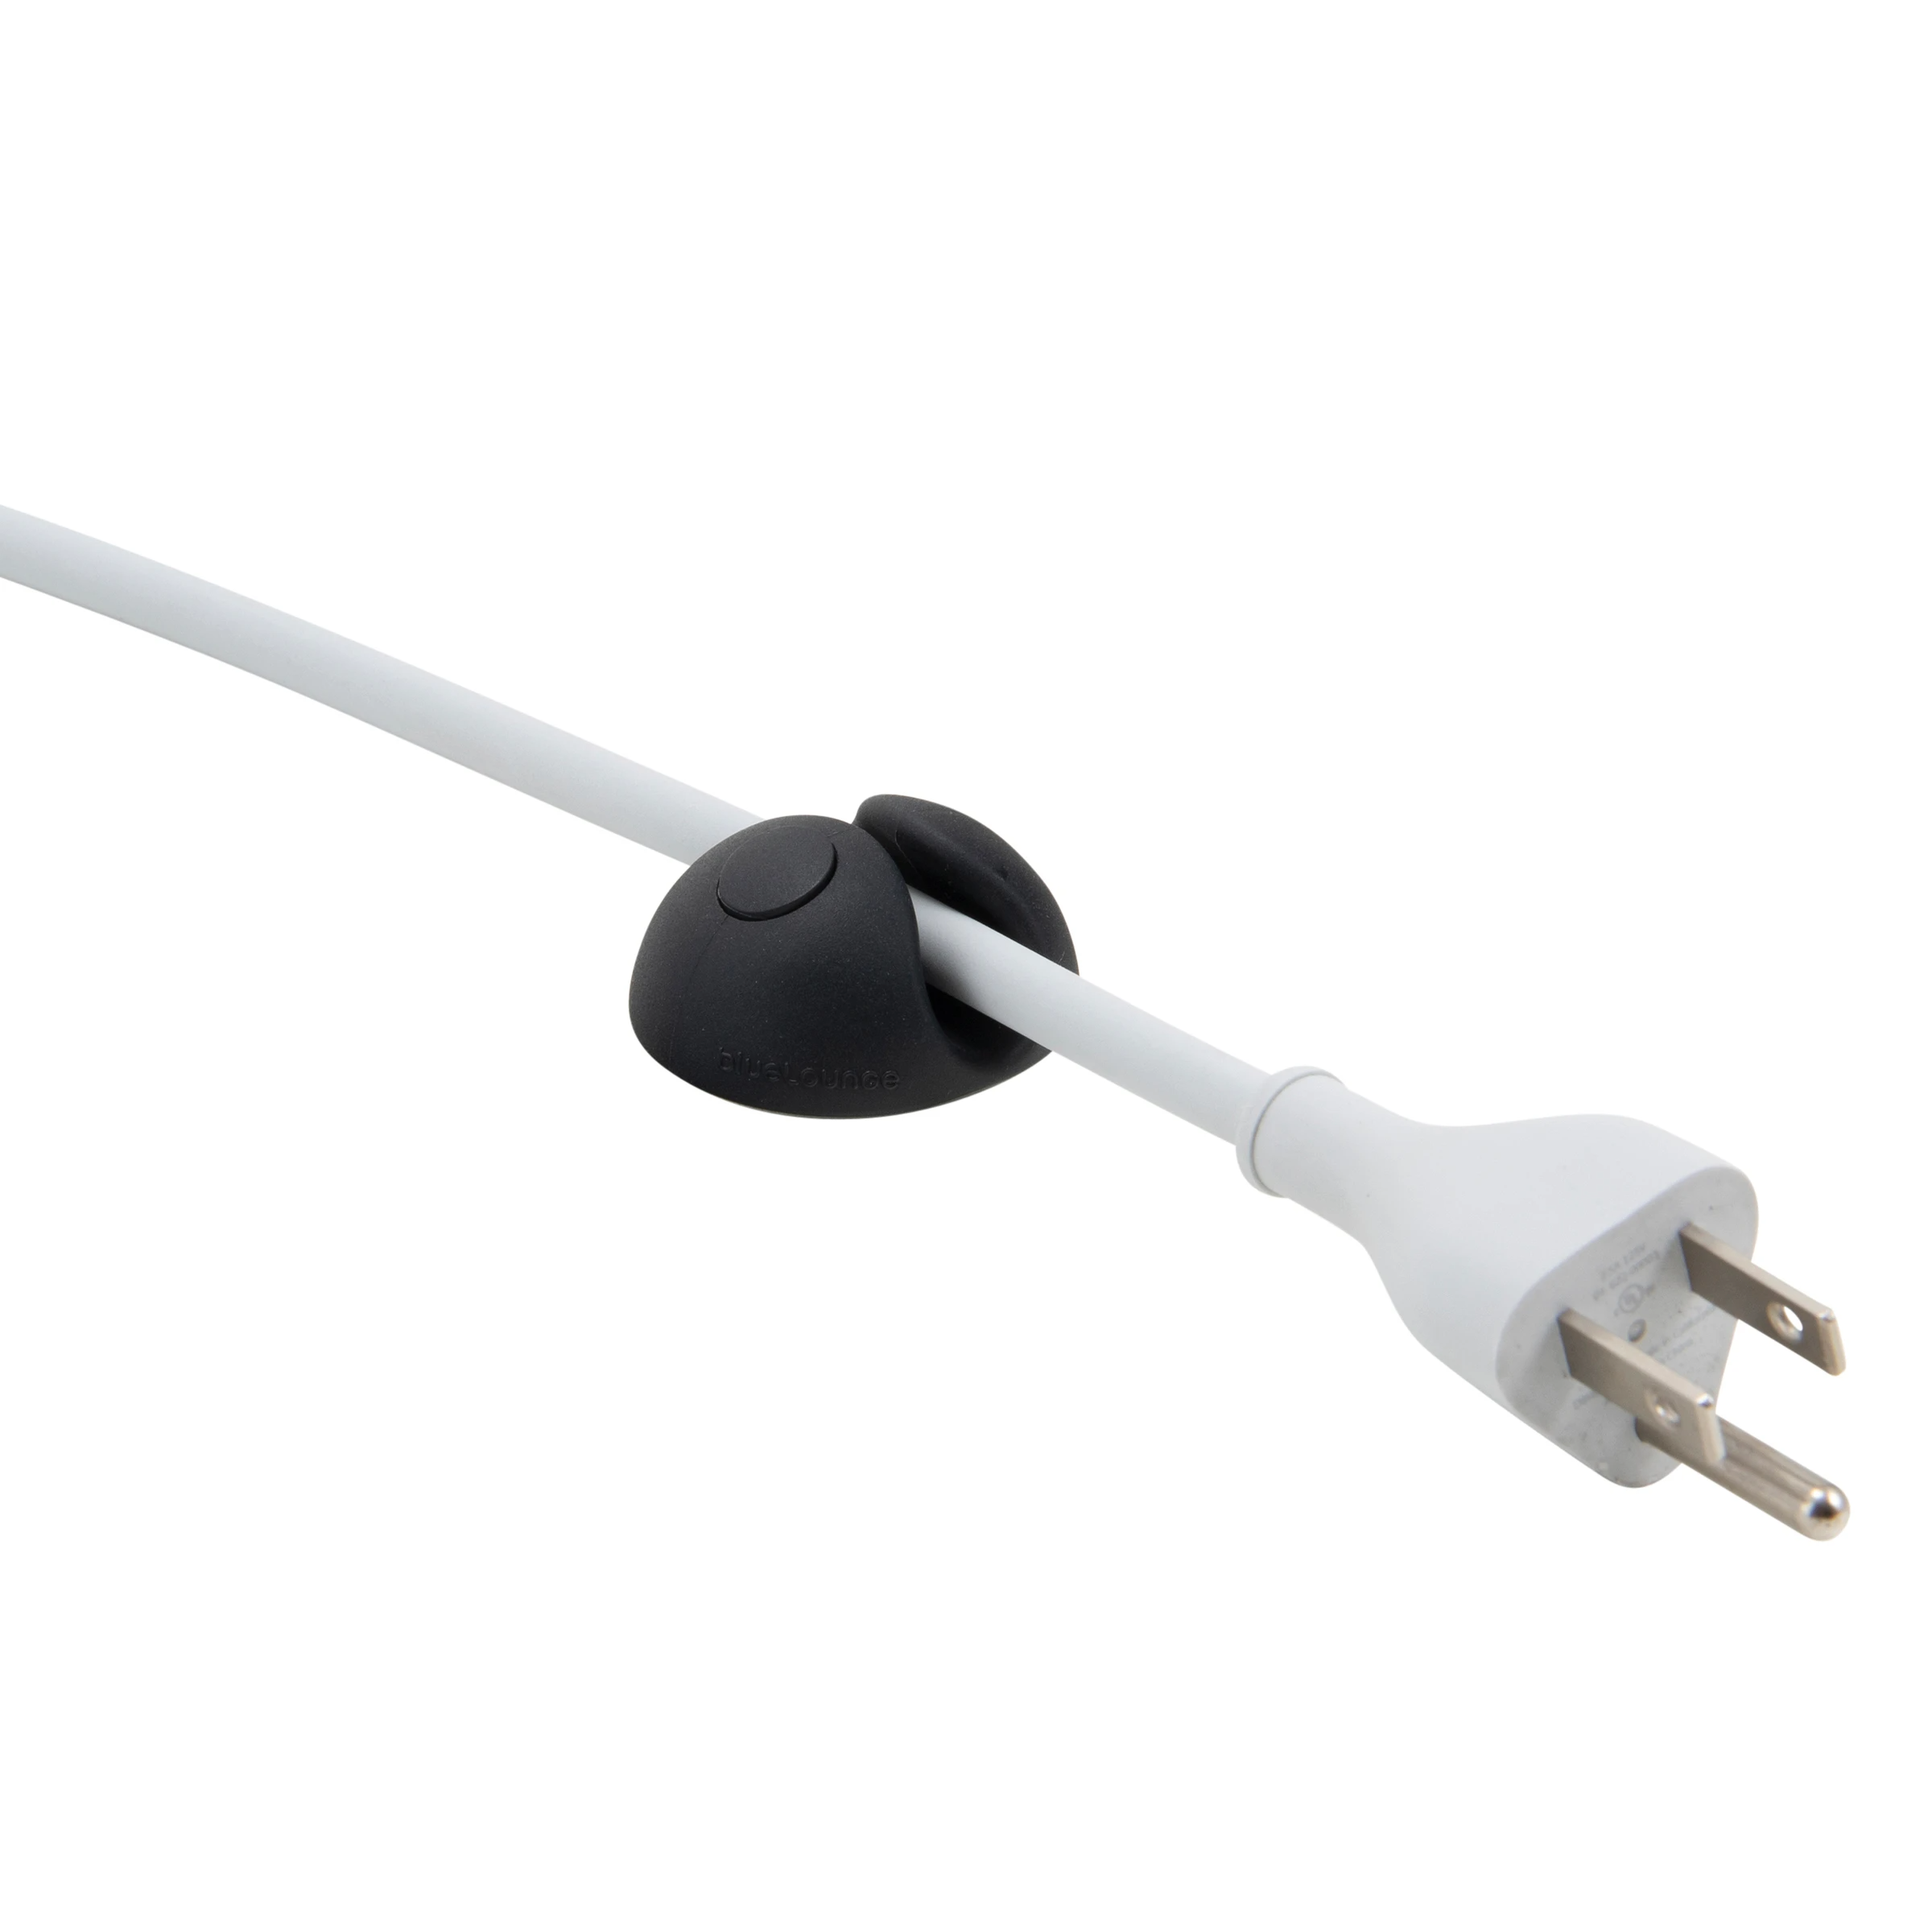 BlueLounge Cable Drop XL 多重用途整線器【香港行貨】 - Five 1 Store